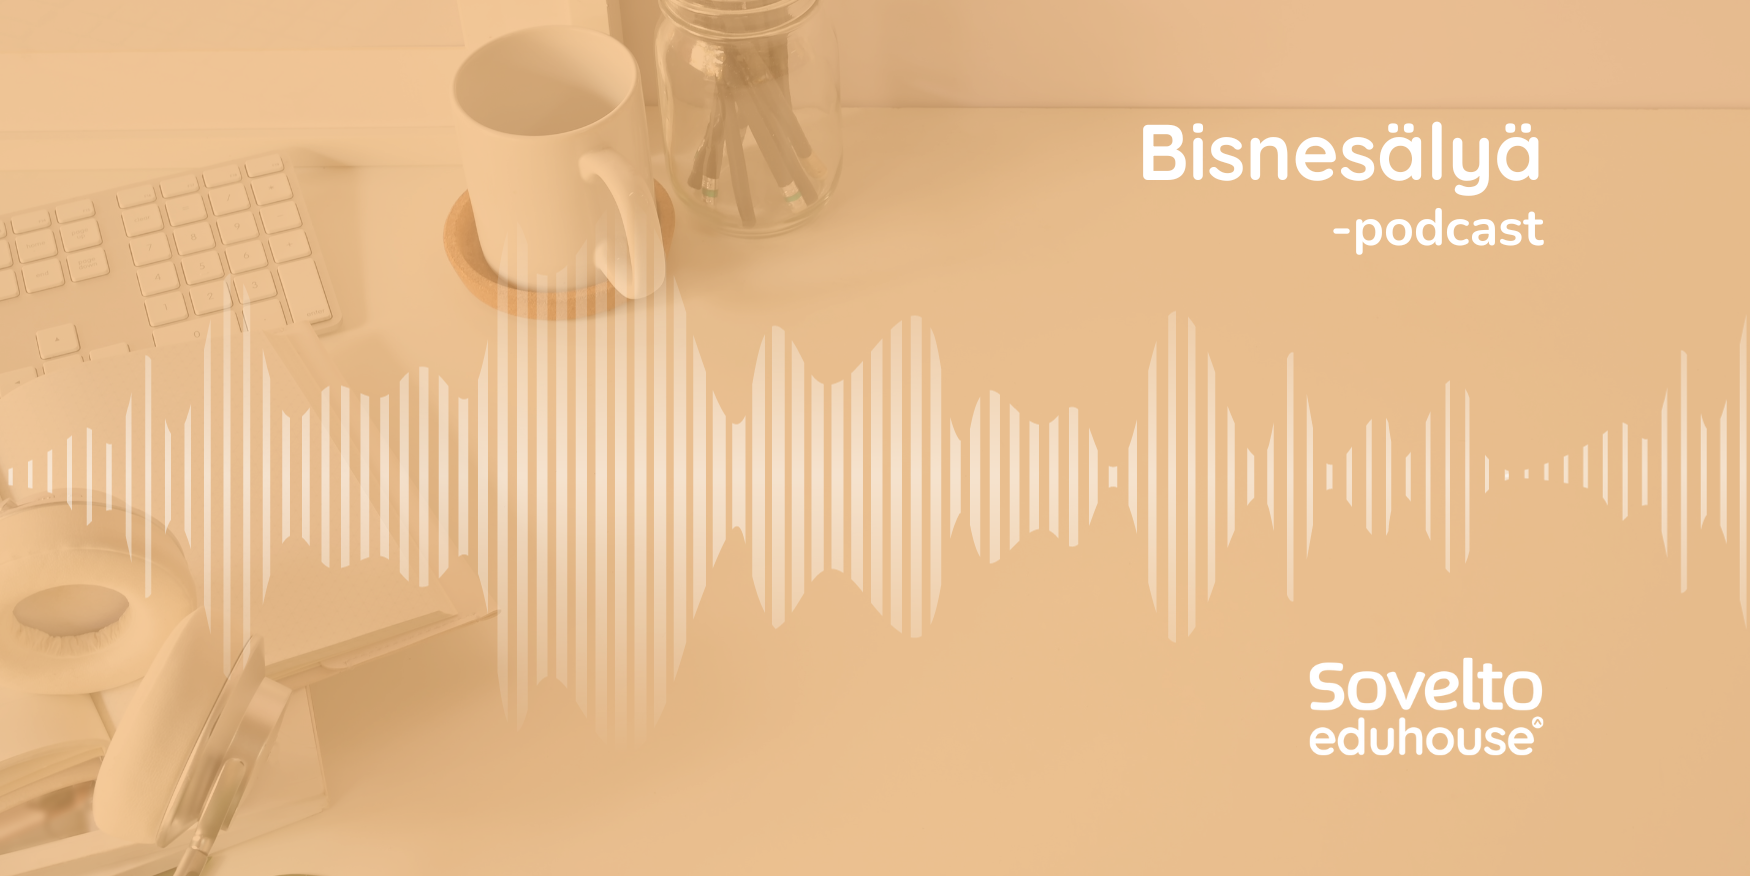 Bisnesälyä-podcast: Kestävää kilpailuetua ja innovaatioita tekoälyllä